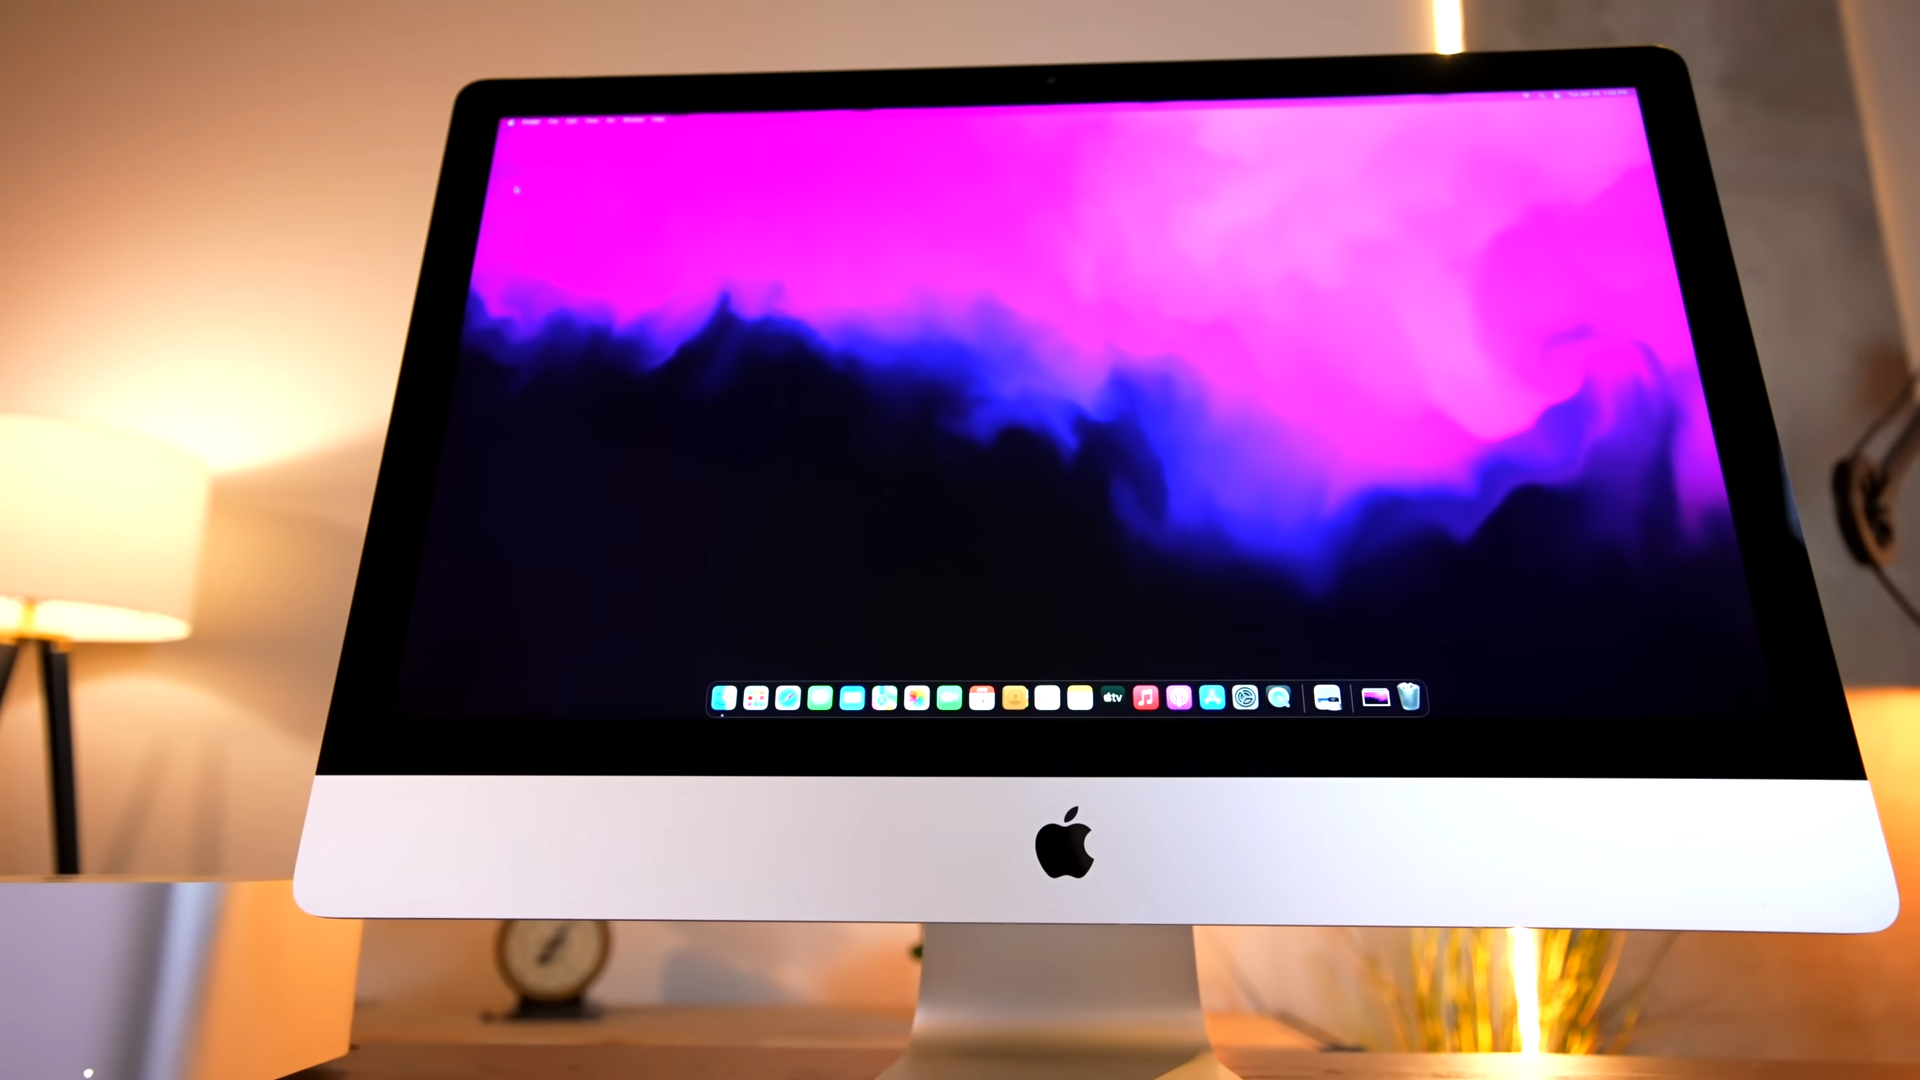 iMac 27 in Studio Display